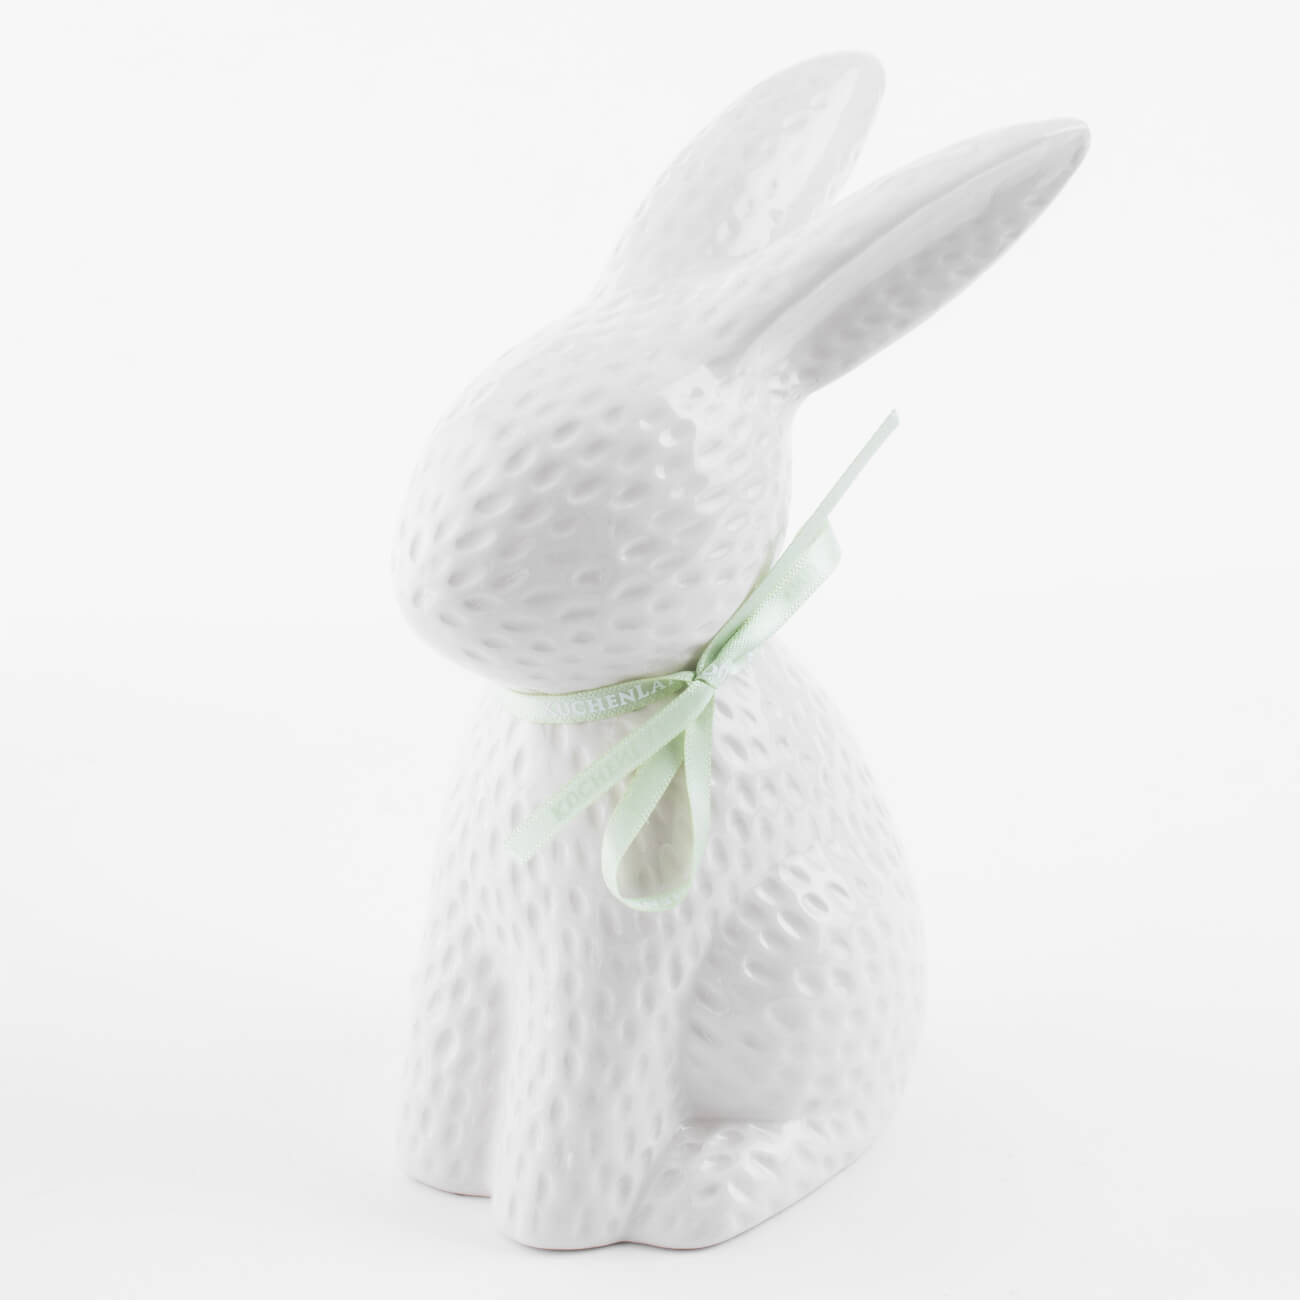 Статуэтка, 18 см, керамика, молочная Кролик сидит, Easter blooming статуэтка женщина сидит на боку